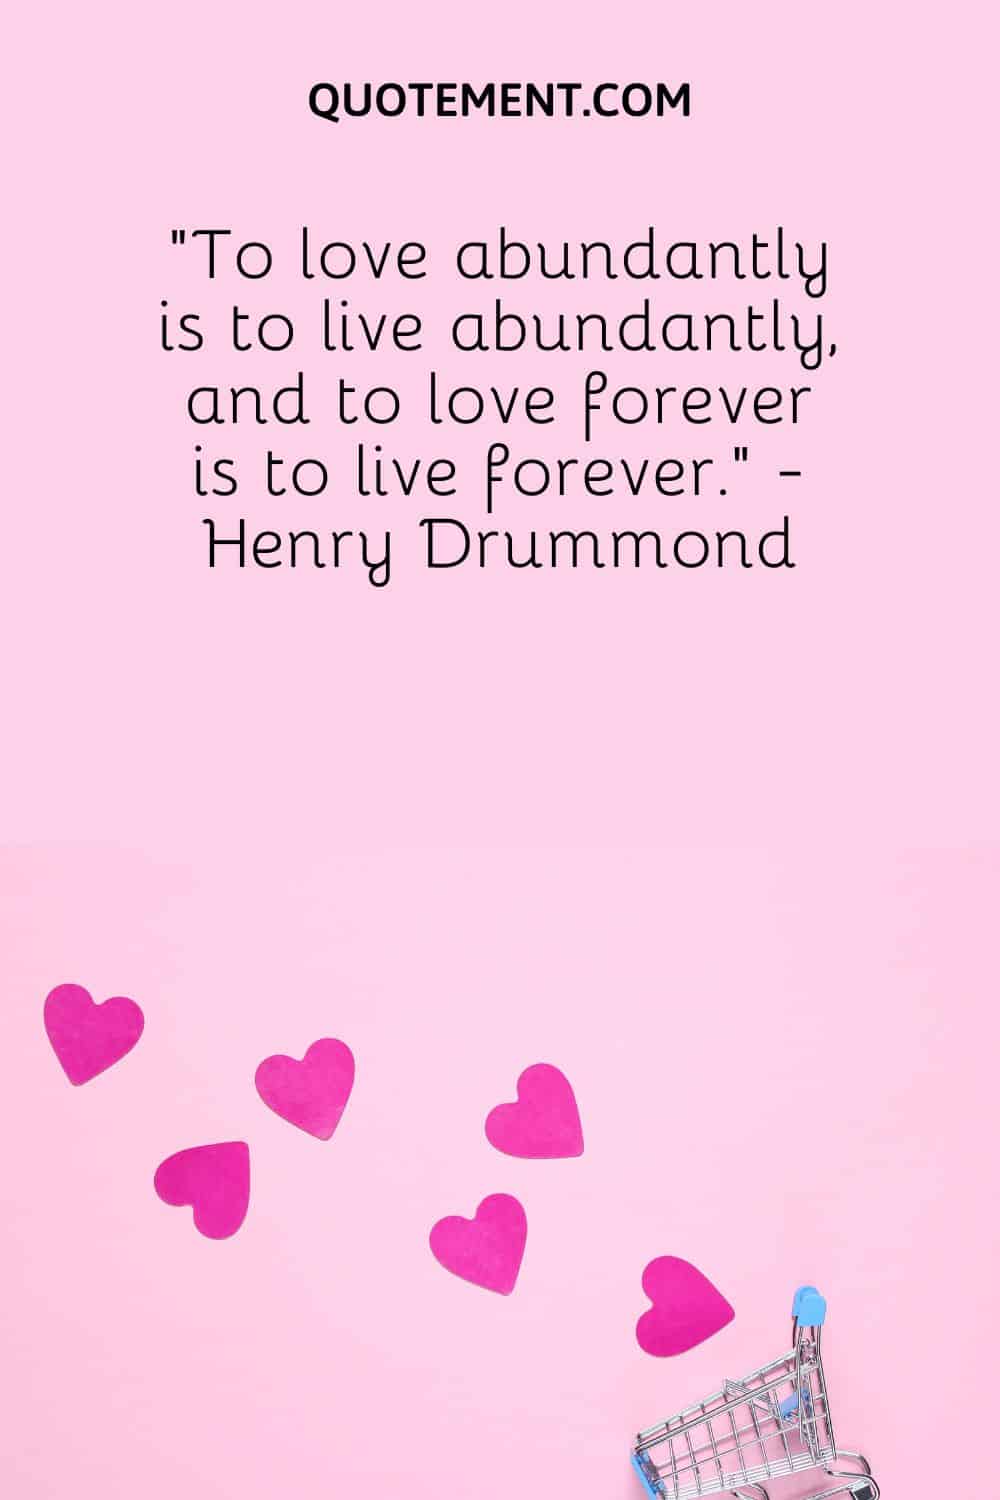 “To love abundantly is to live abundantly, and to love forever is to live forever.” - Henry Drummond